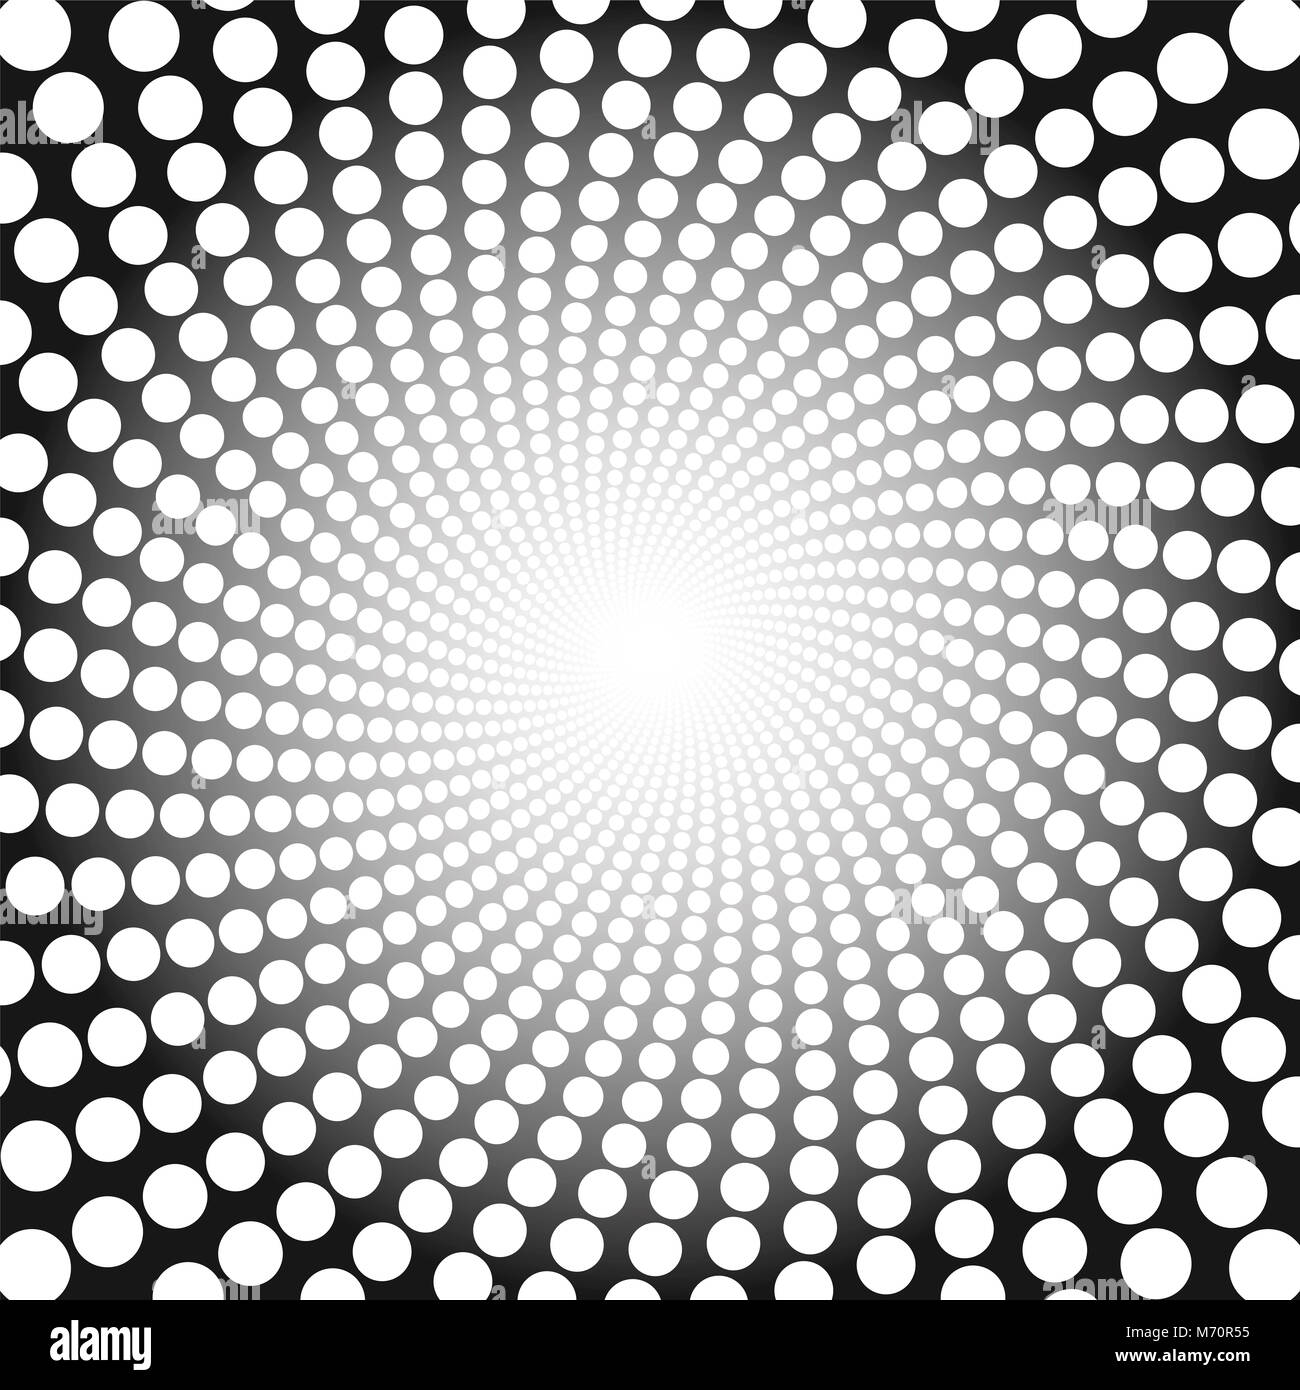 Spiralförmige Muster. Weiß gepunkteten Tunnel mit hellen Zentrum - Twisted kreisförmigen Hintergrund Illustration, hypnotisch und psychedelisch. Stockfoto